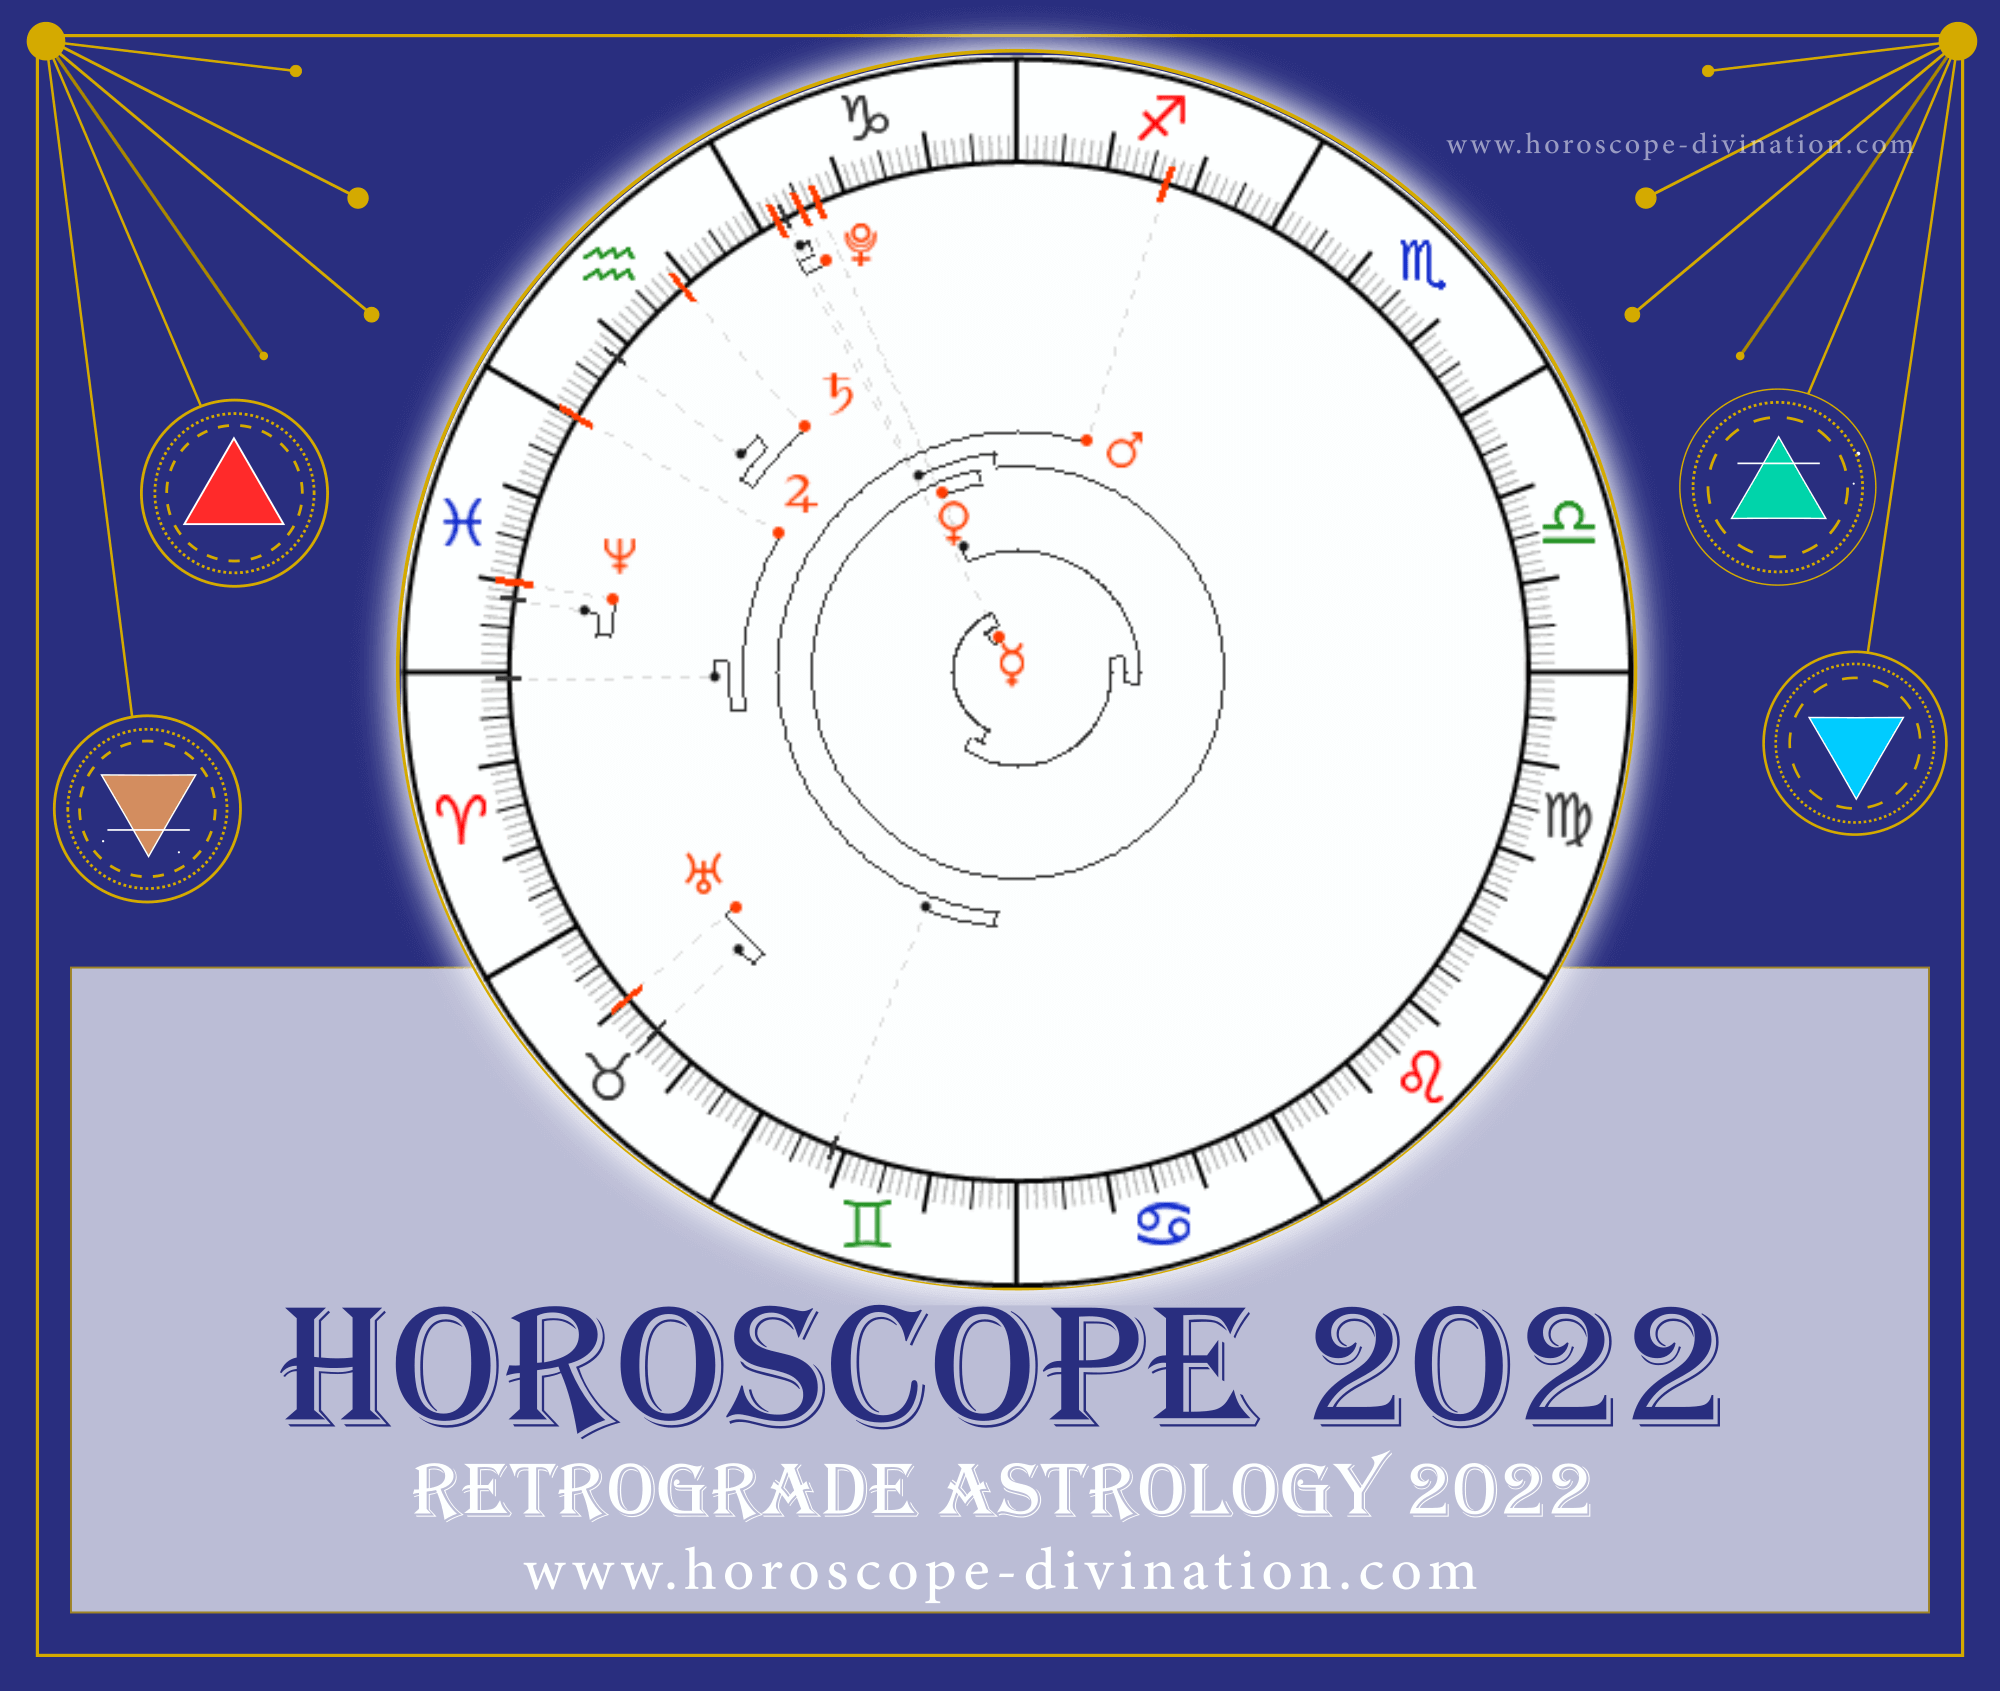 Retrograde Astrology 2022 - graph of Horoscope 2022 Cancer